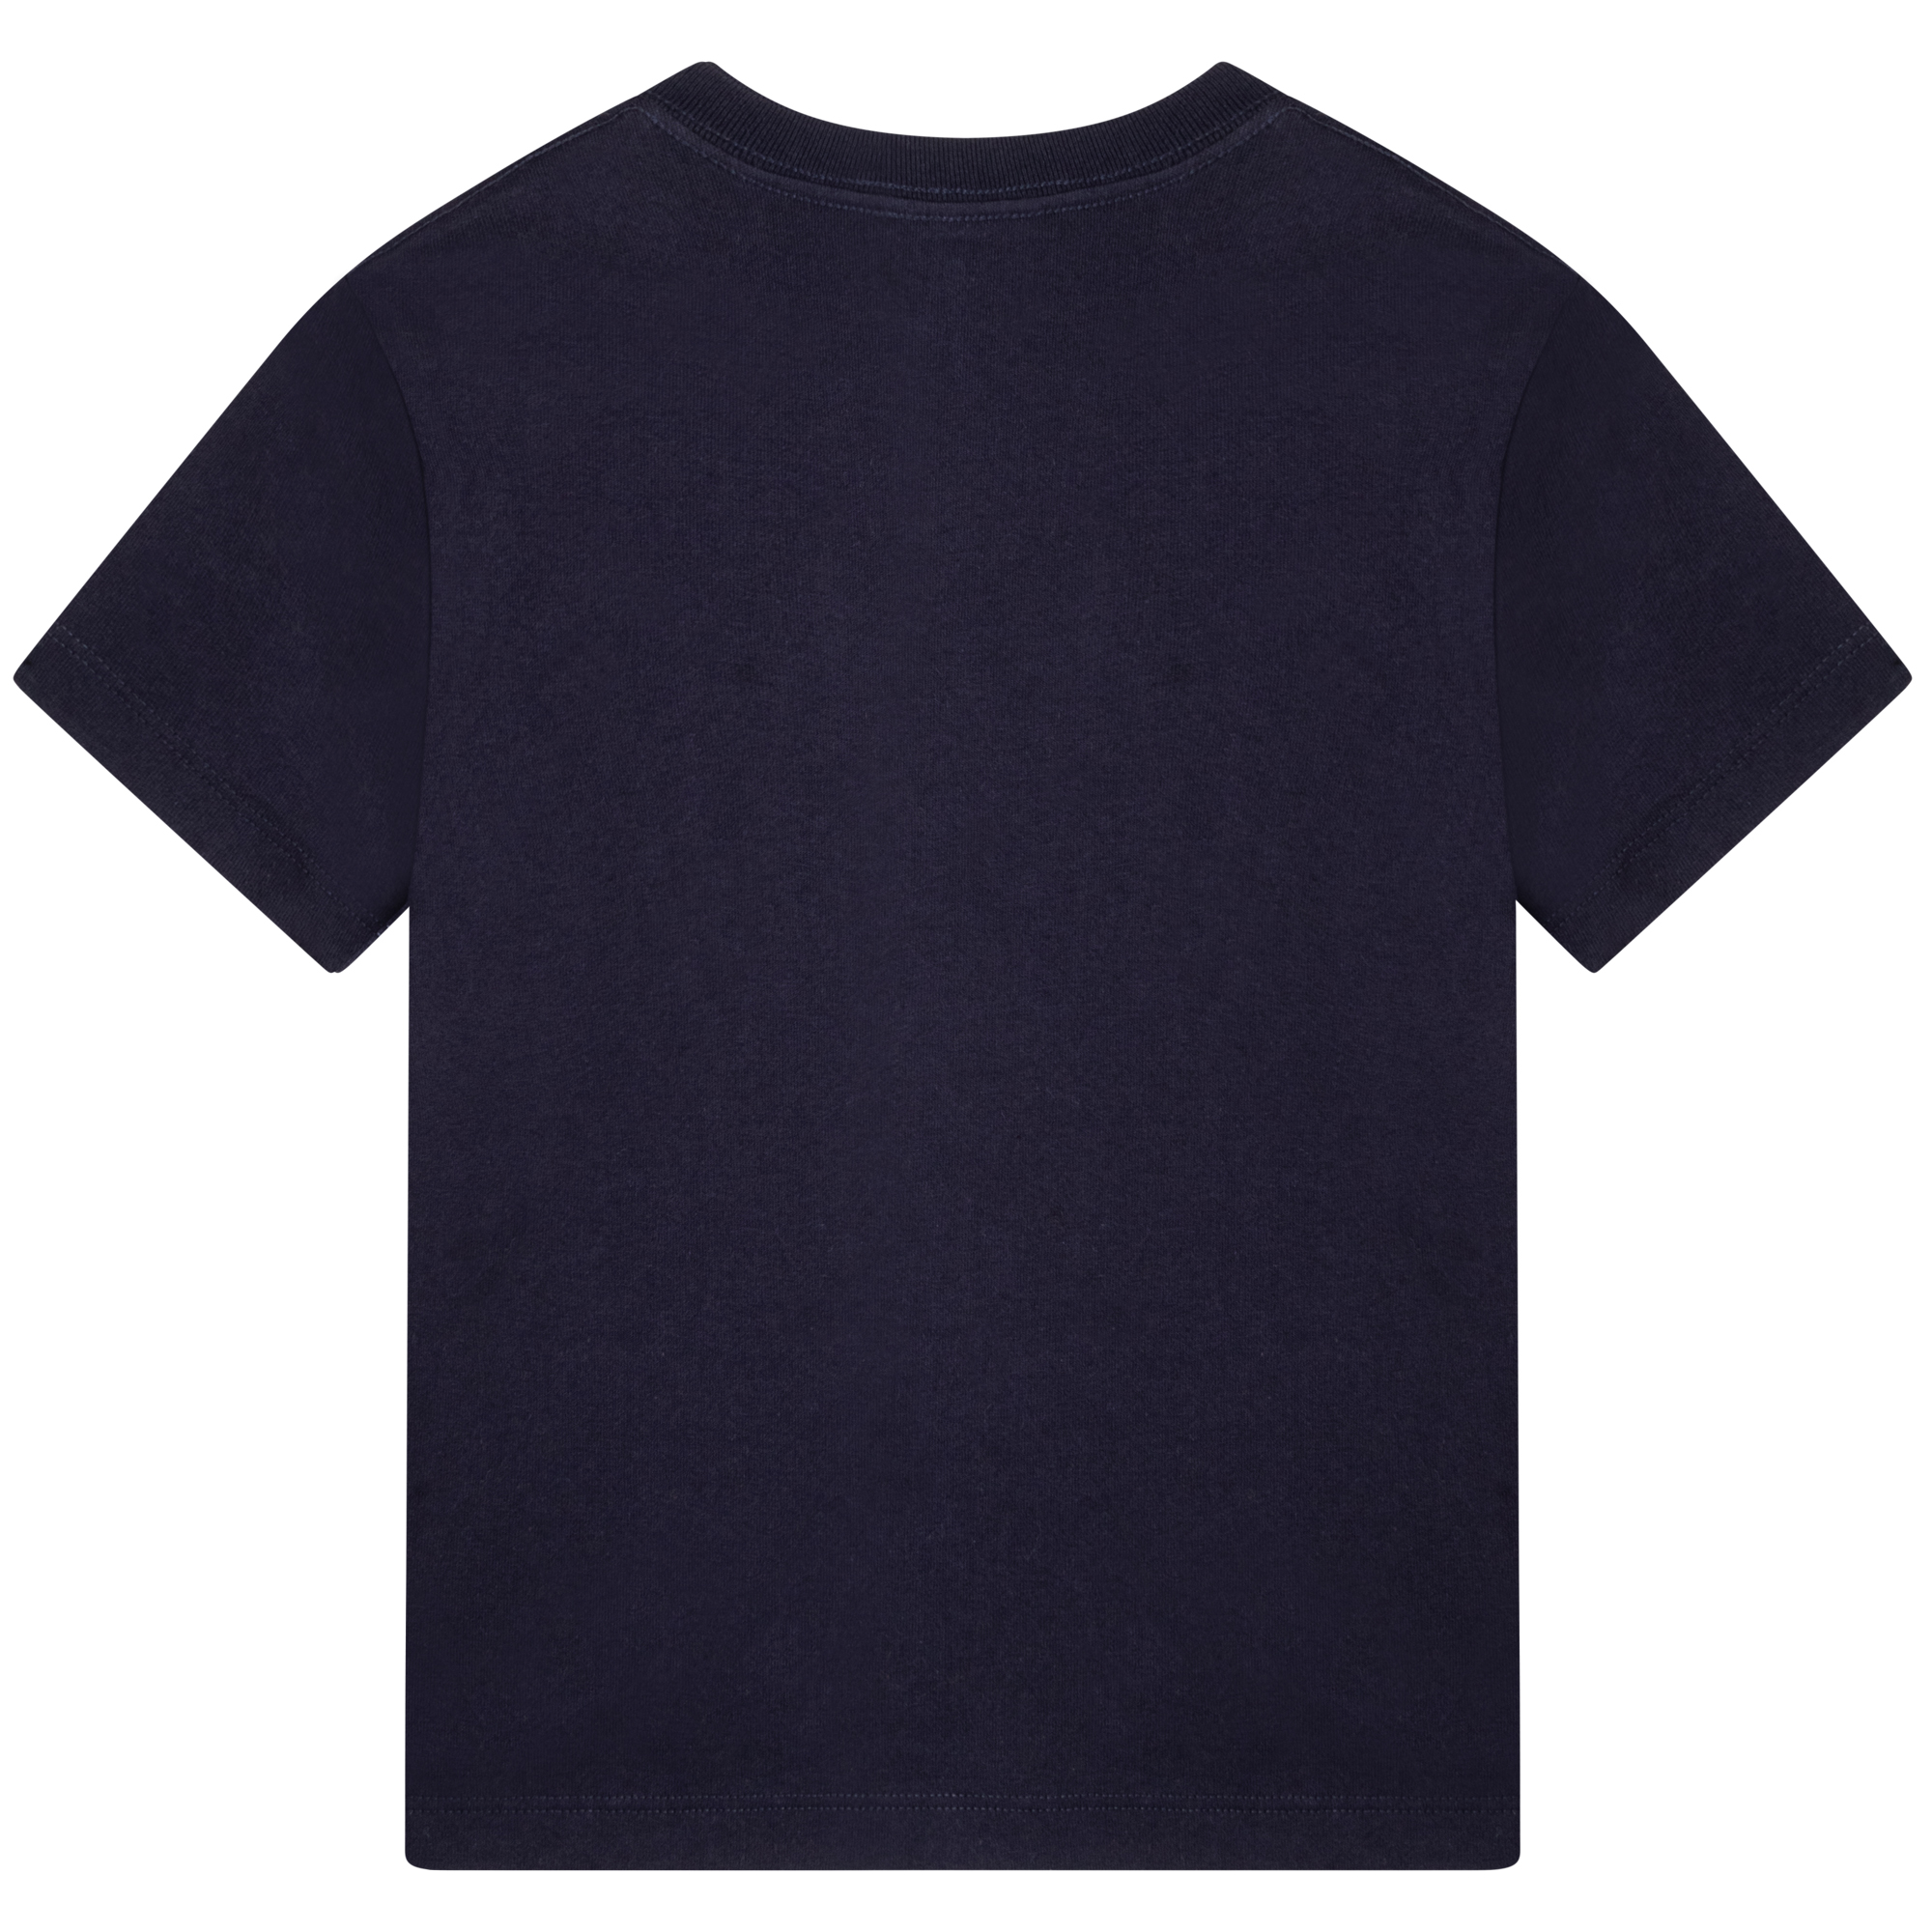 T-shirt met korte mouwen LANVIN Voor